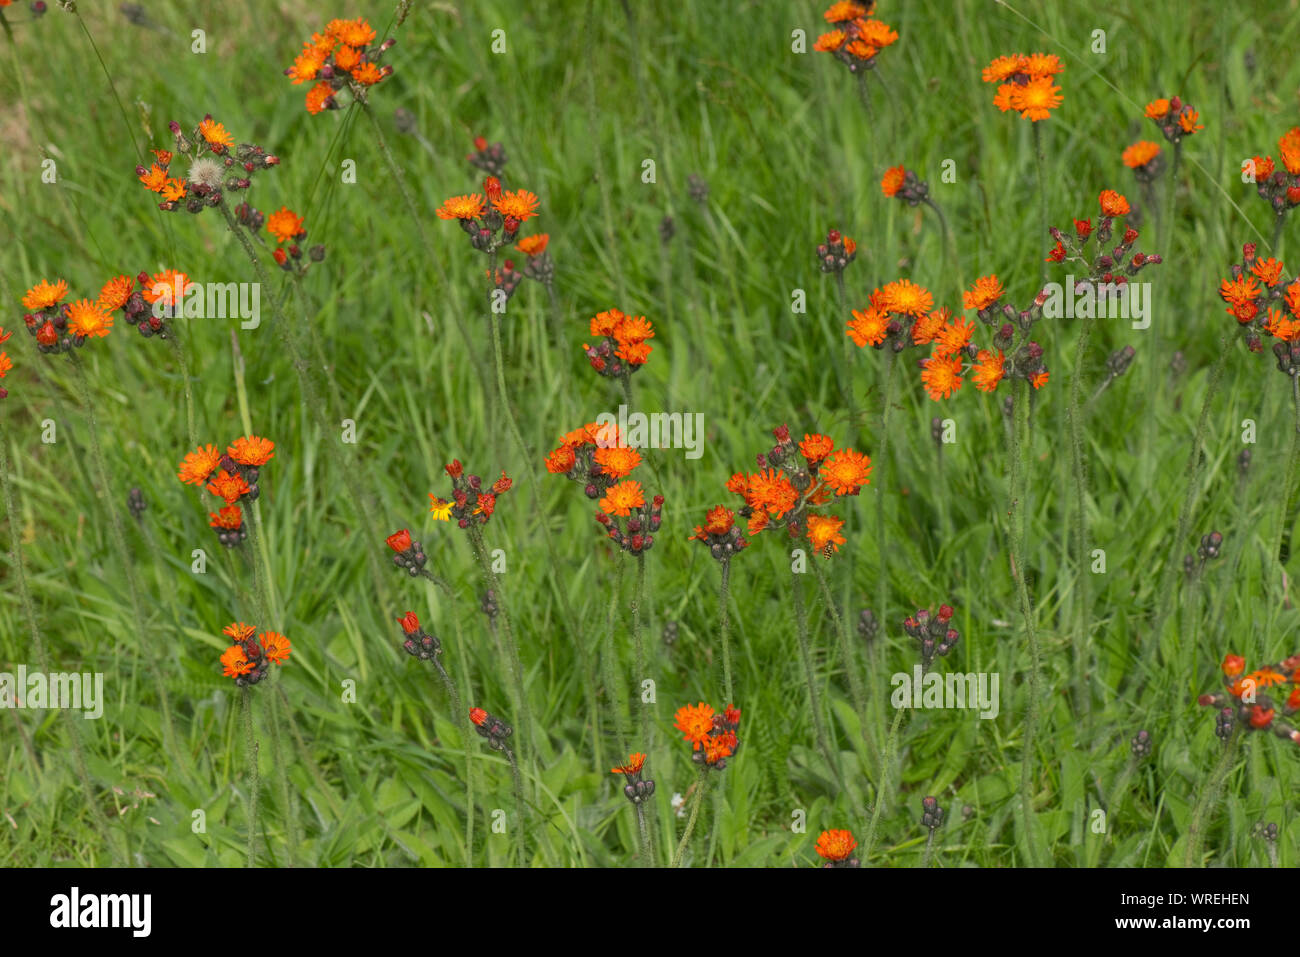 Fuchs-und-Jungen oder Orange hawkbit (Pilosella, Aurantiaca) Blüte im Garten Rasen, Berkshire, Juli Stockfoto